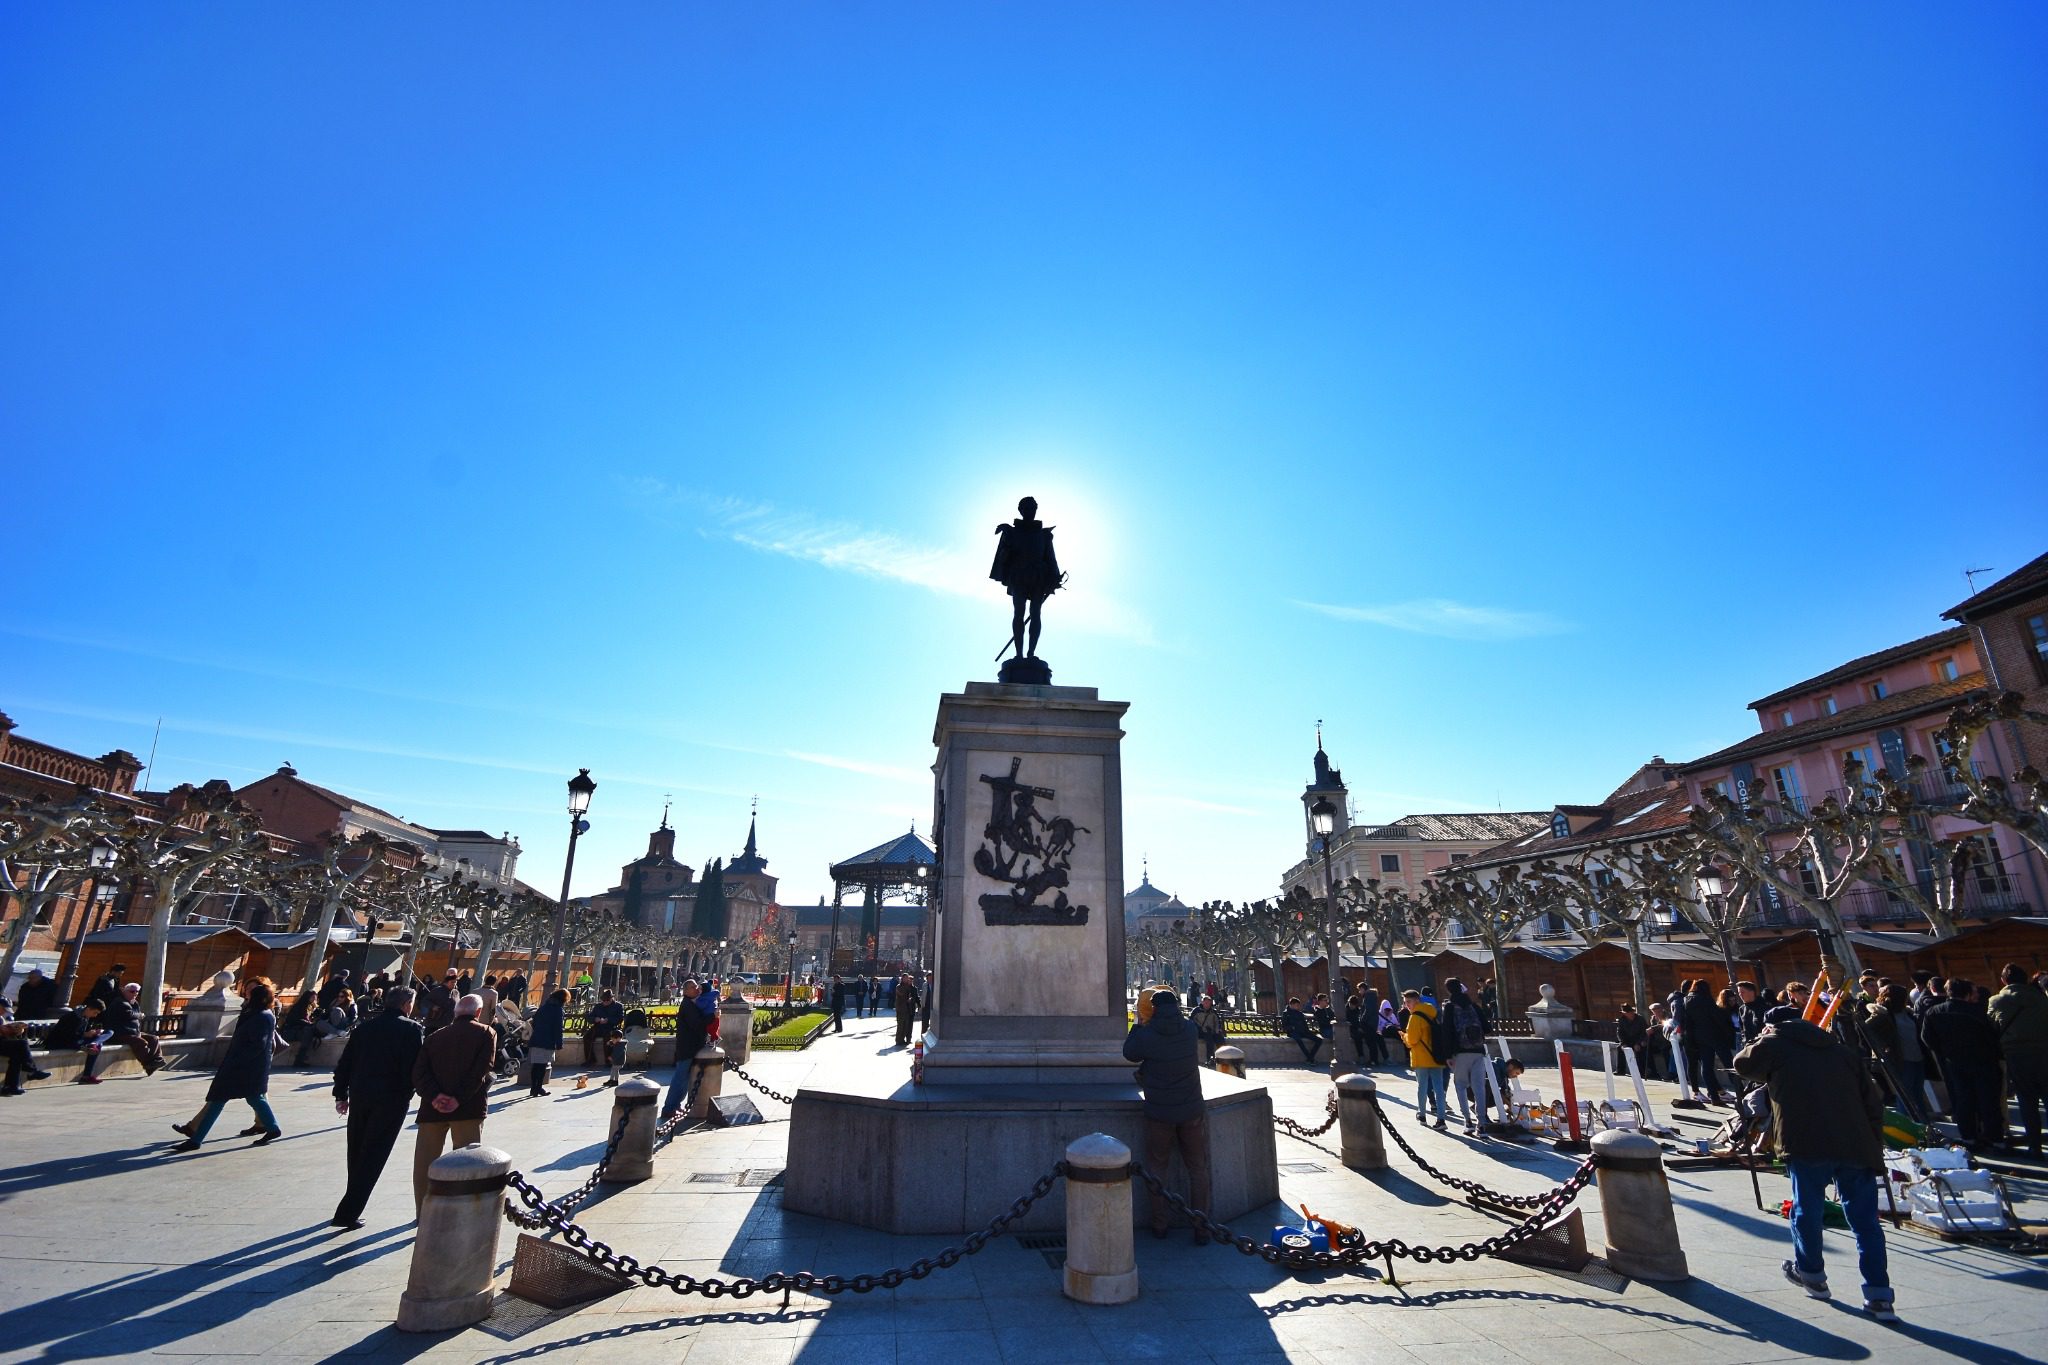 Plano general de la estatua de Cervantes con gente paseando alrededor, en la plaza de cervantes